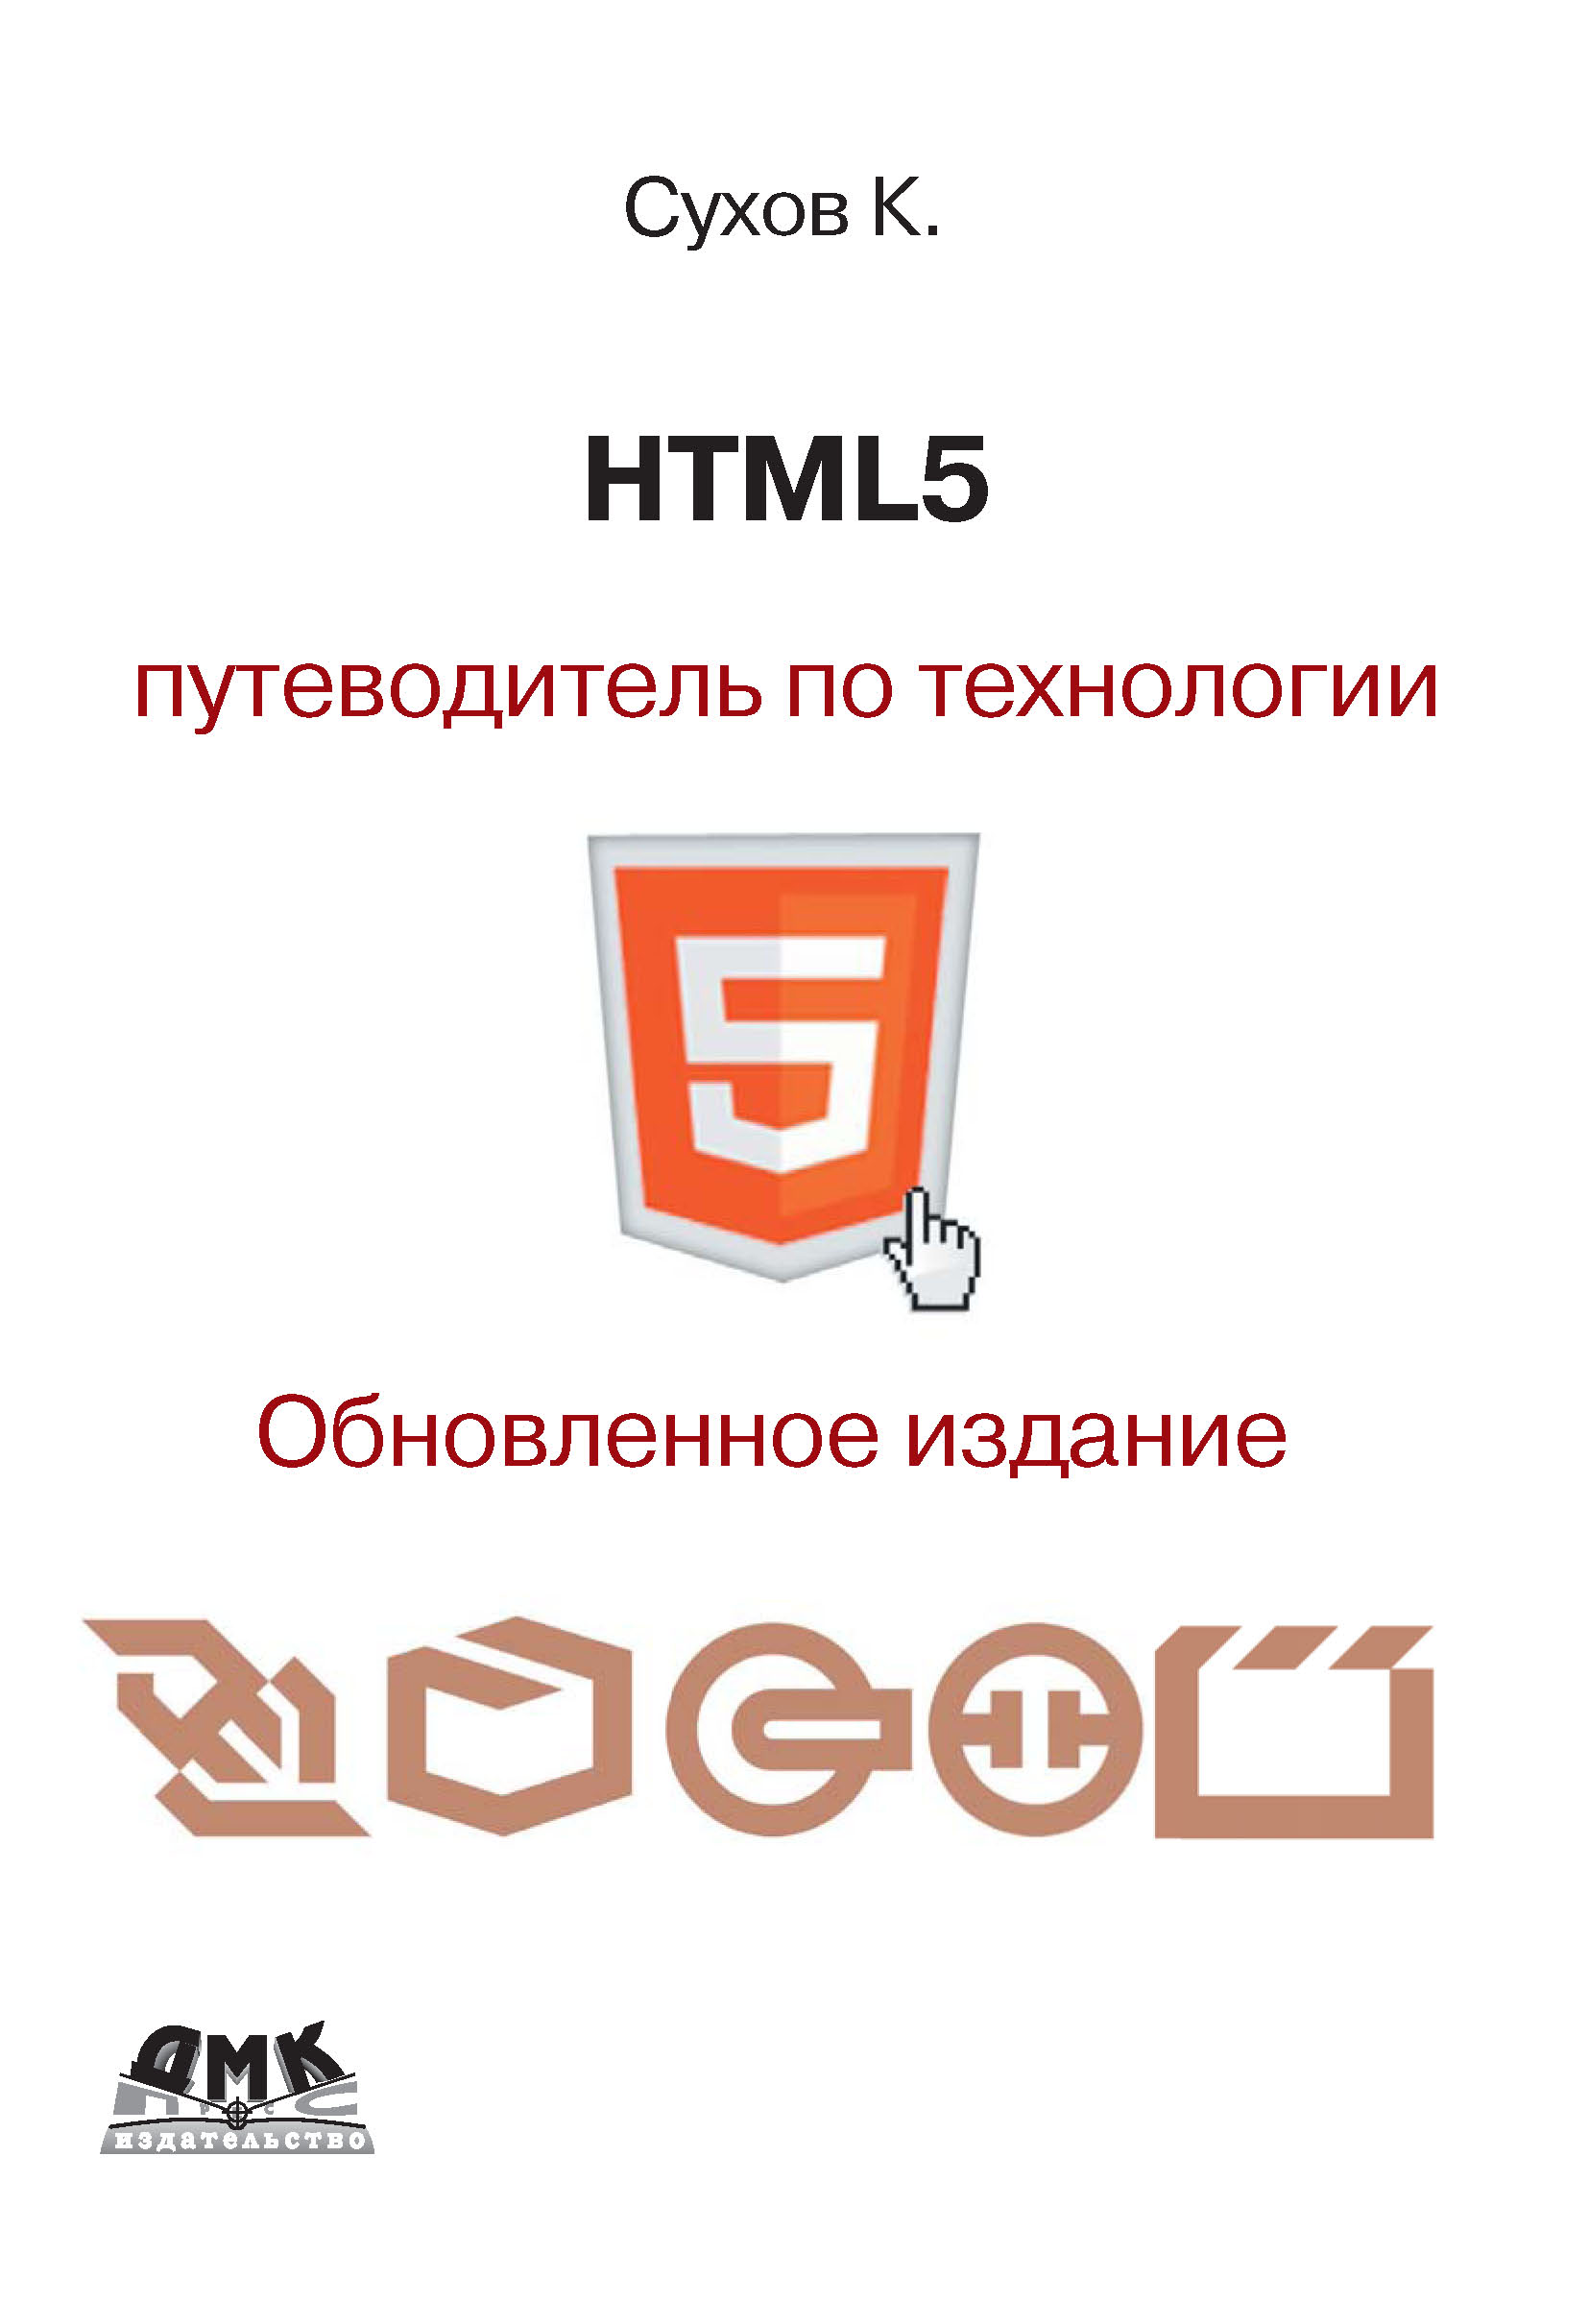 Книга  HTML5 – путеводитель по технологии созданная К. К. Сухов может относится к жанру интернет, программирование. Стоимость электронной книги HTML5 – путеводитель по технологии с идентификатором 6089799 составляет 279.00 руб.